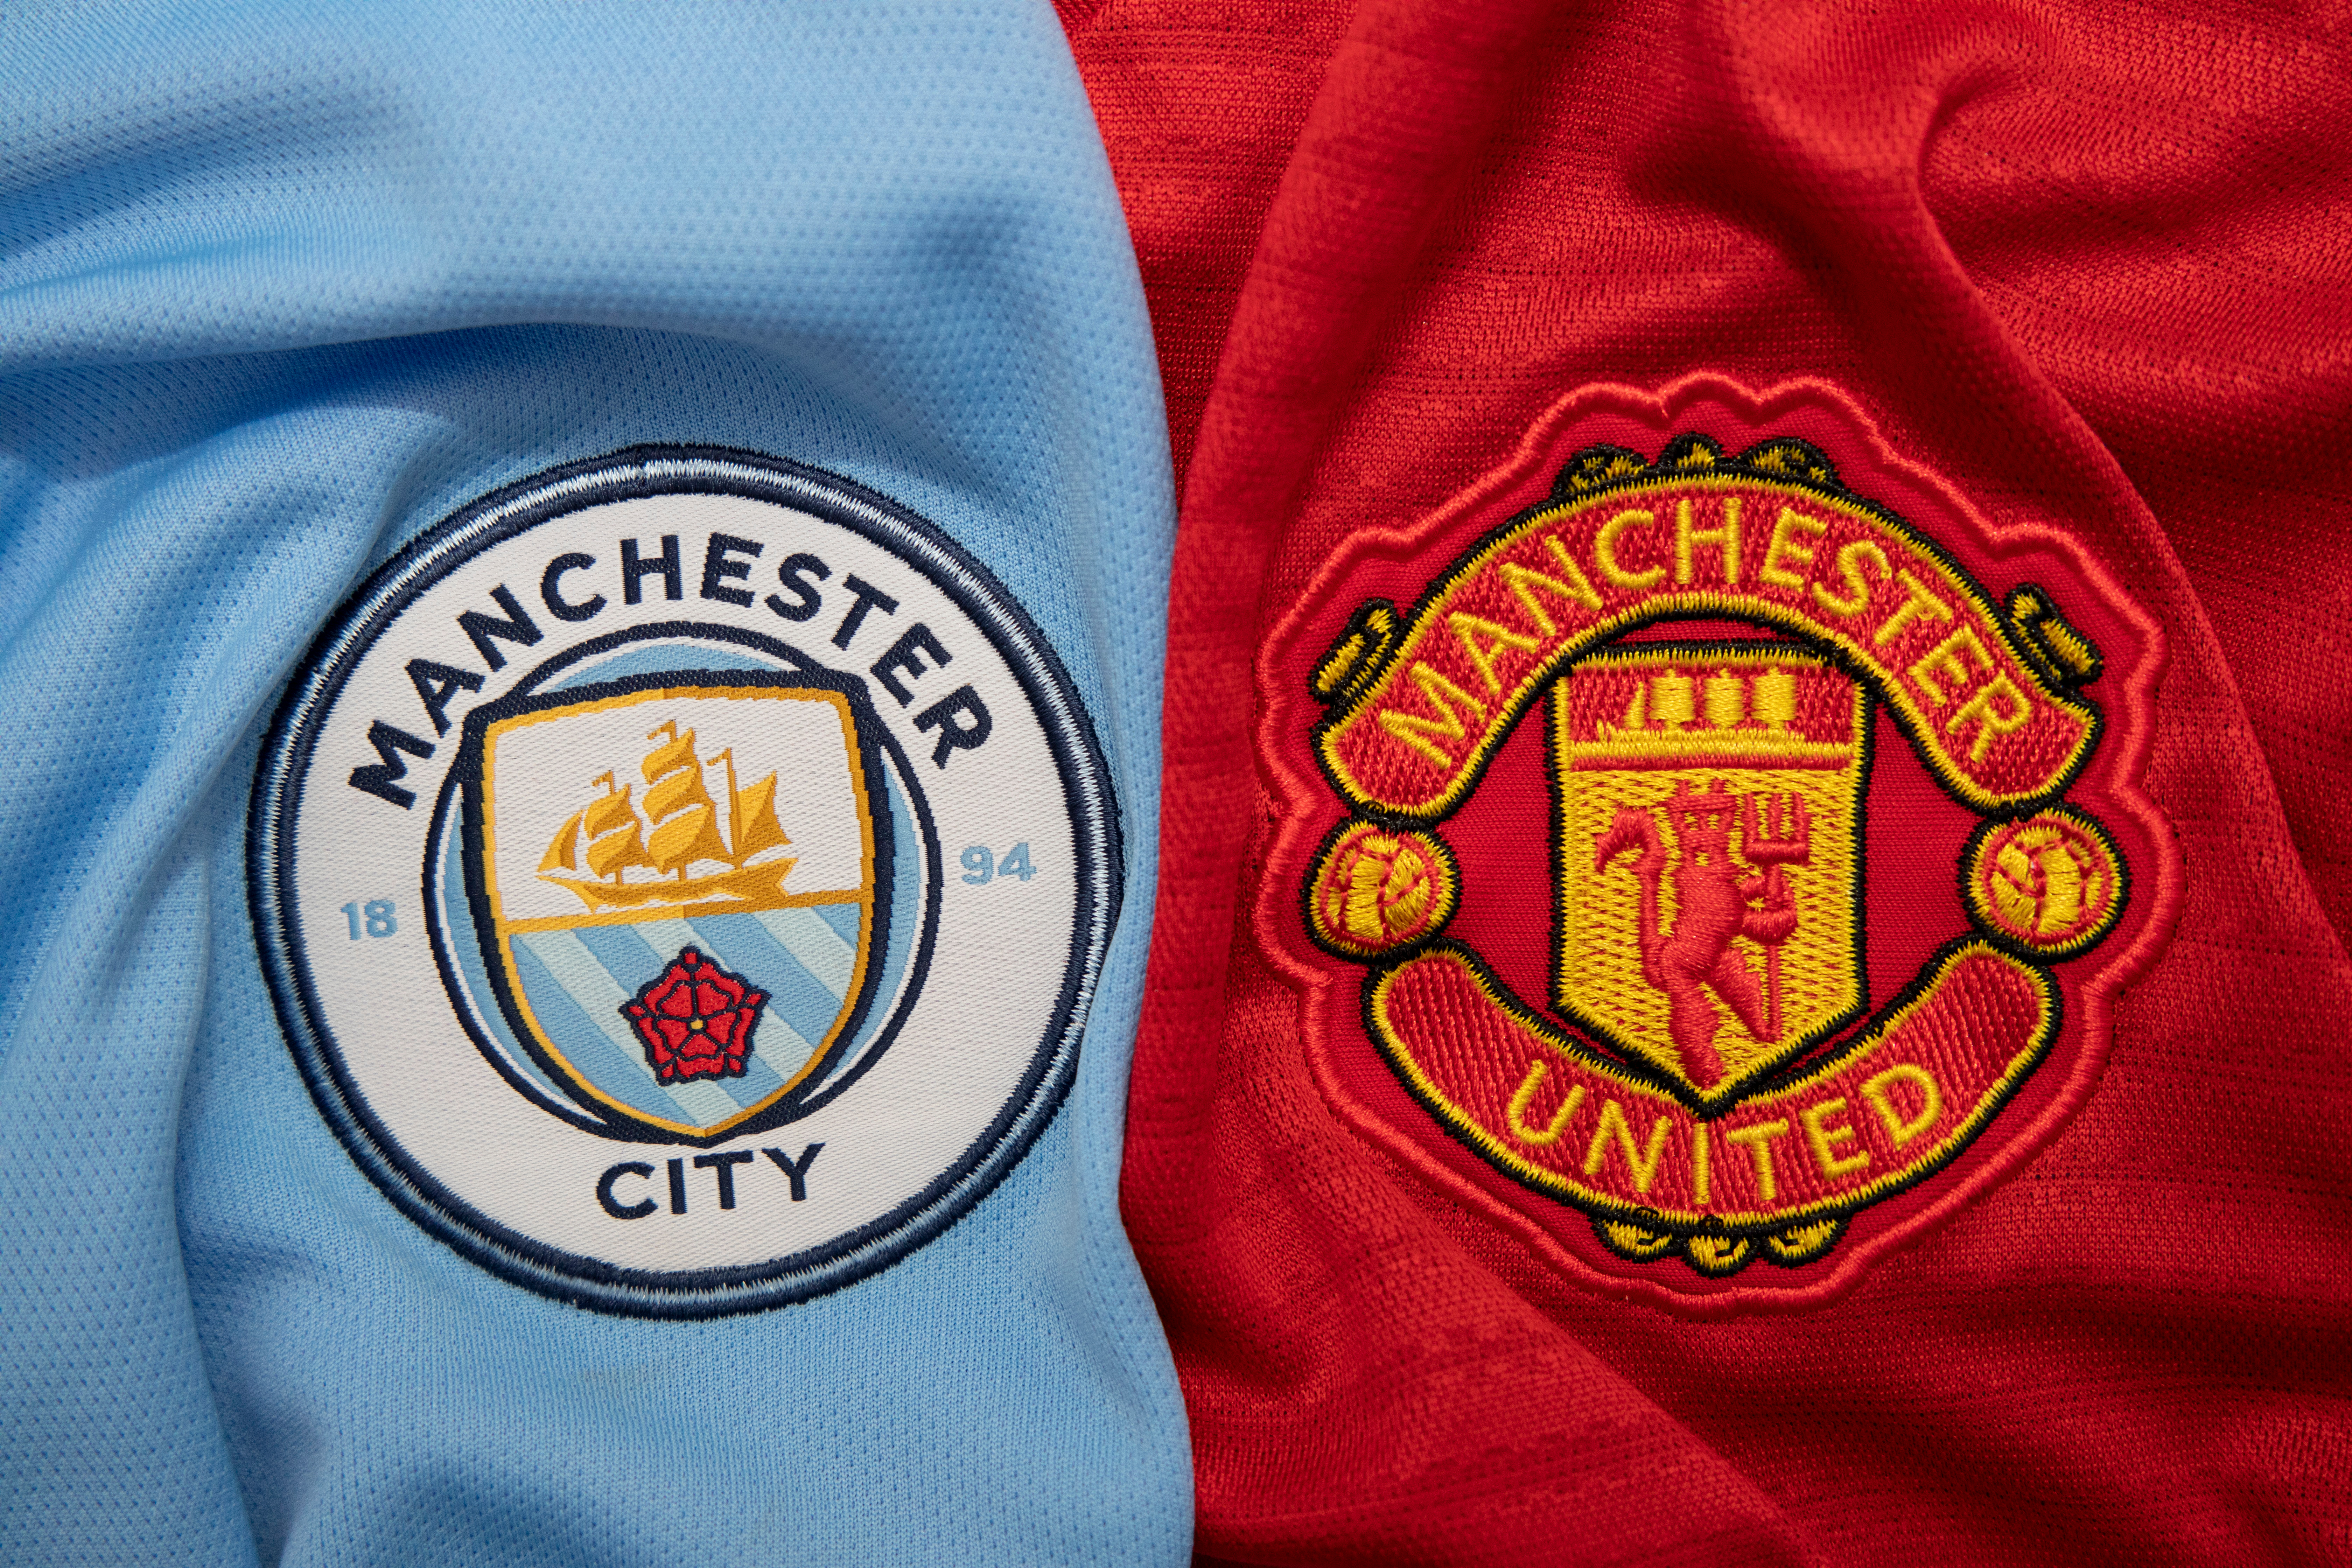 Man City and Man United Shirt Badges